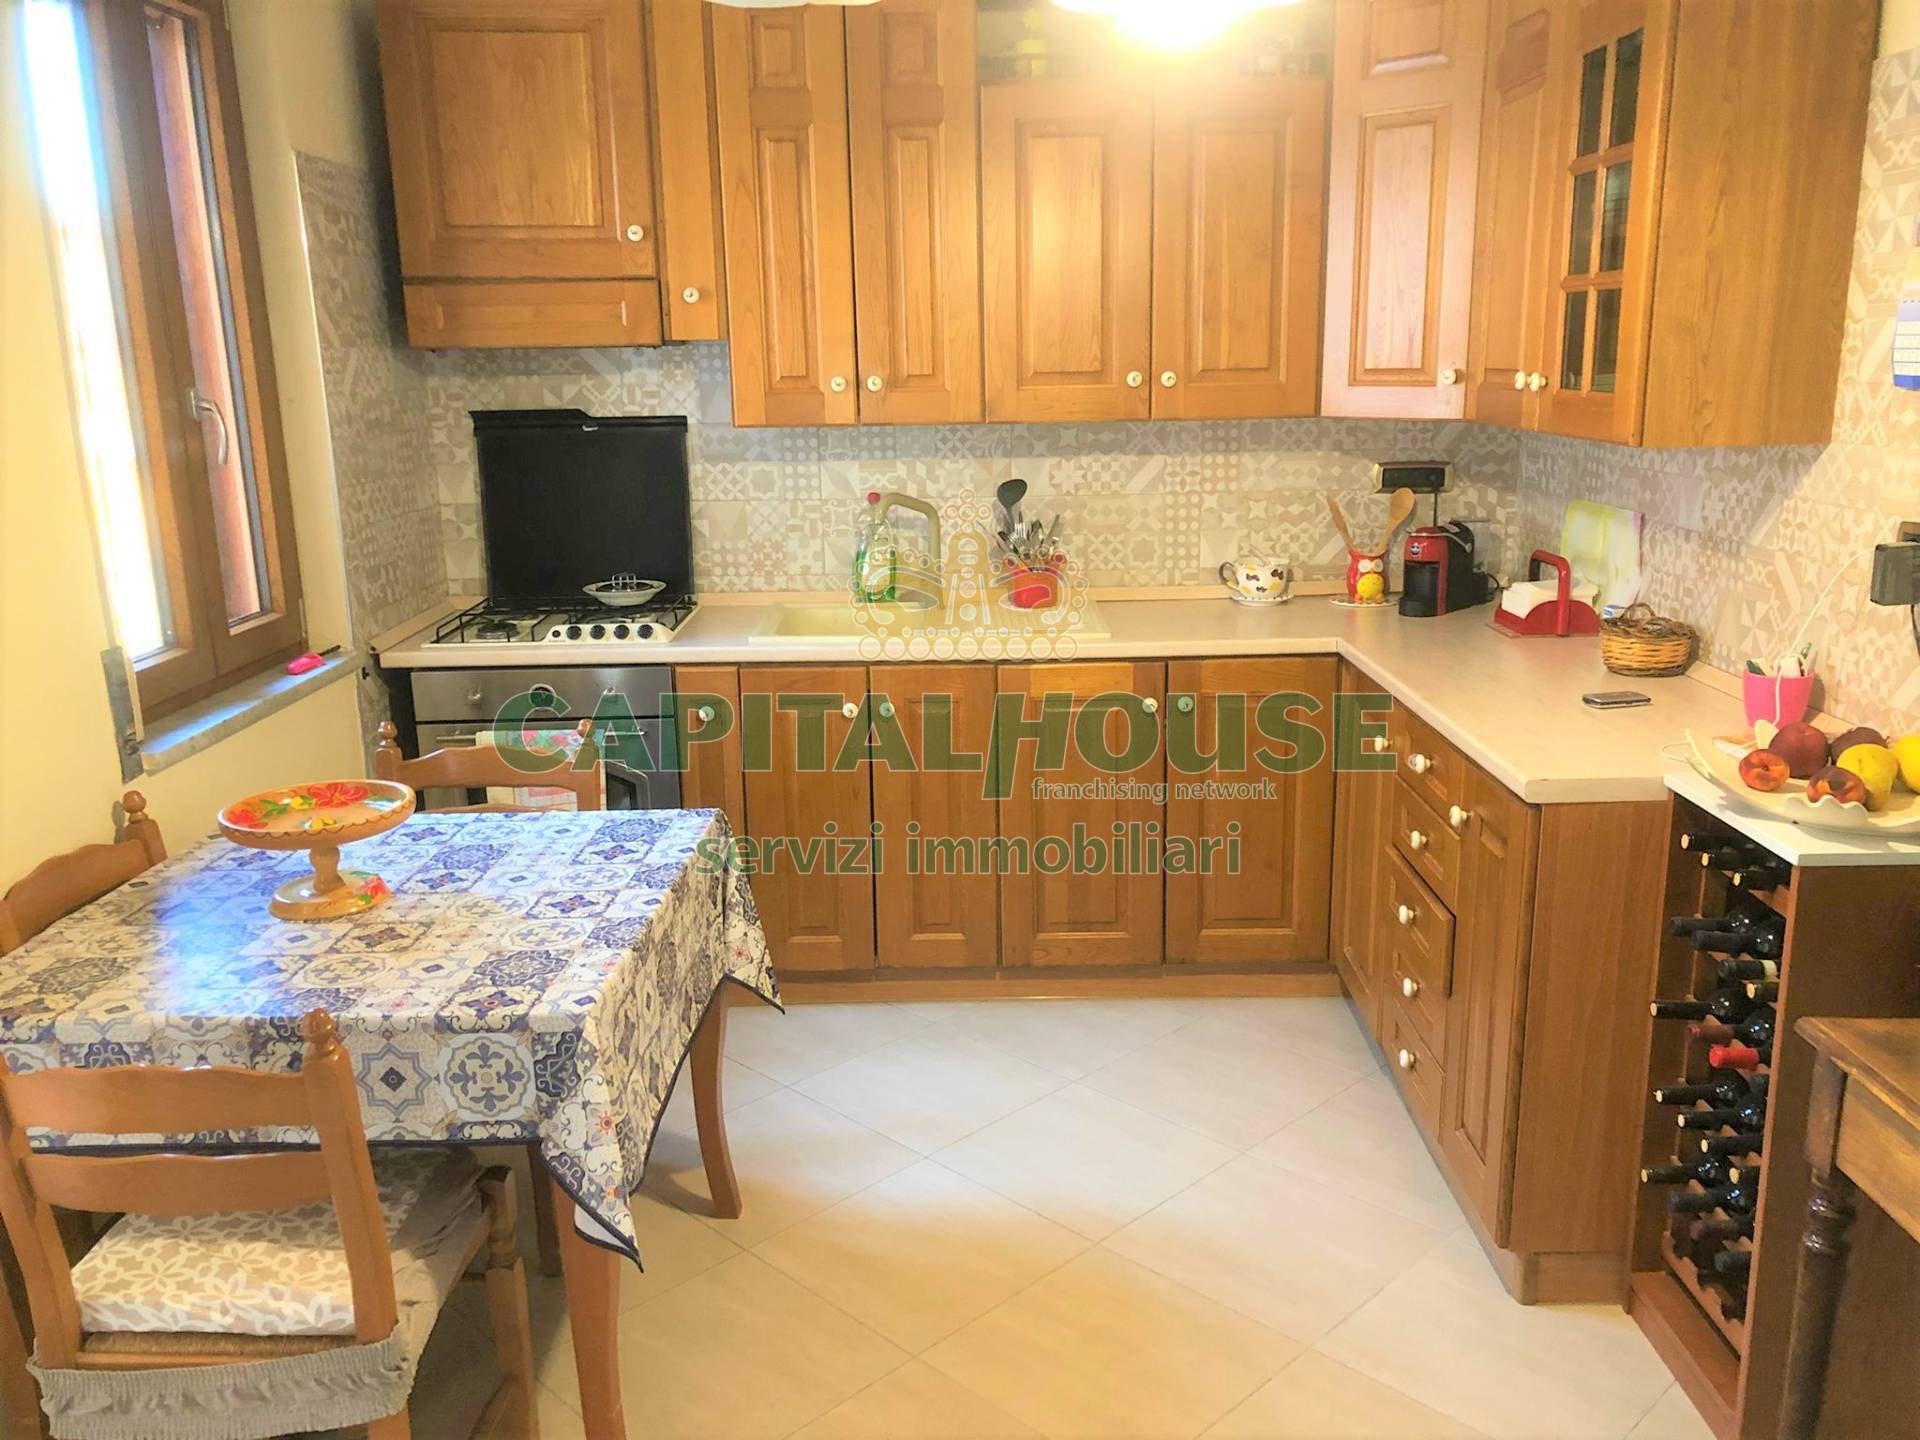 Appartamento in vendita a Montefalcione, 3 locali, prezzo € 104.000 | CambioCasa.it